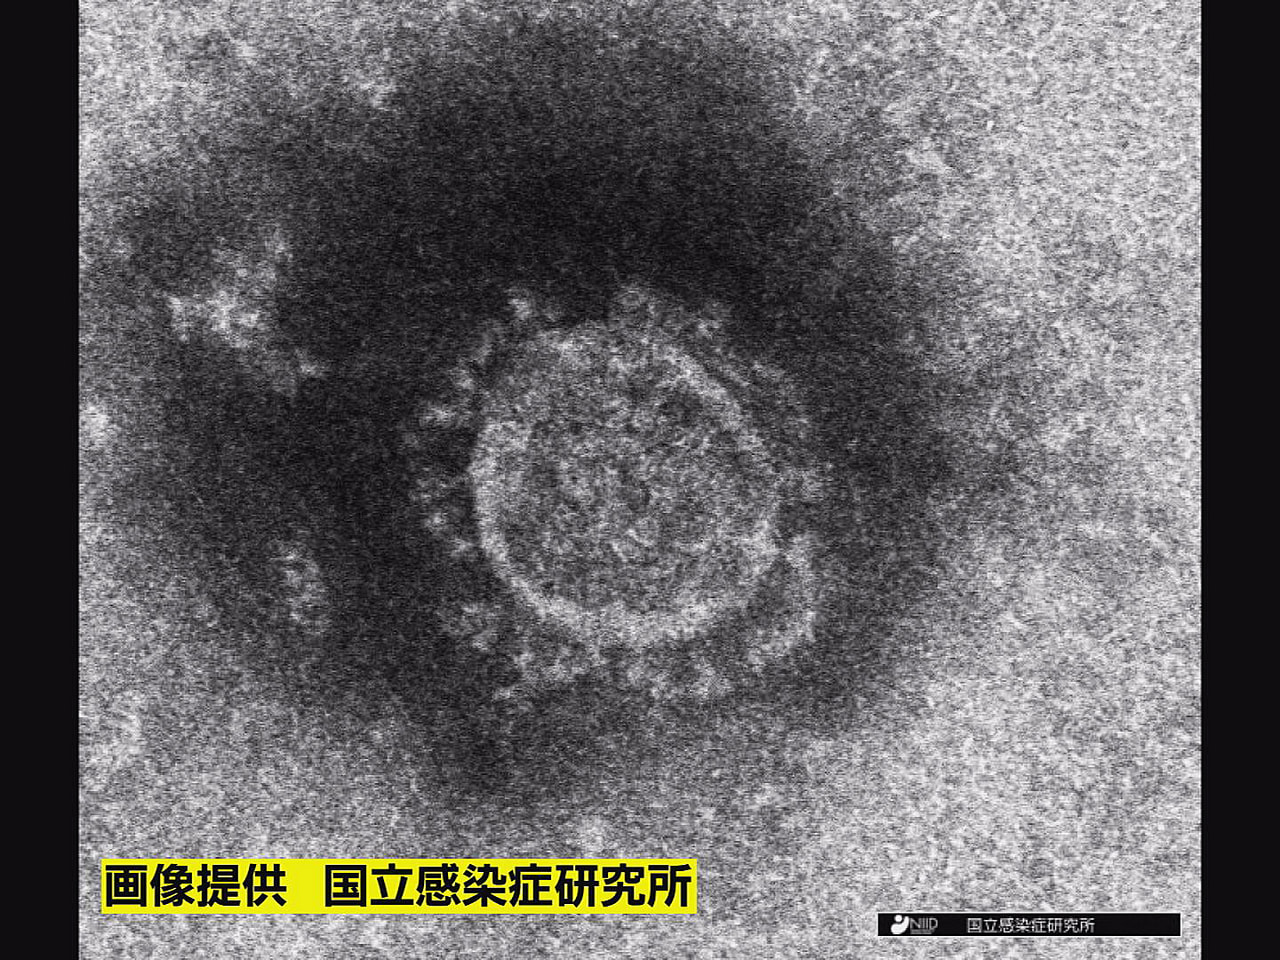 岐阜県は５日、新型コロナウイルスの新規感染者が２５０人、また１人の死亡が確認され...